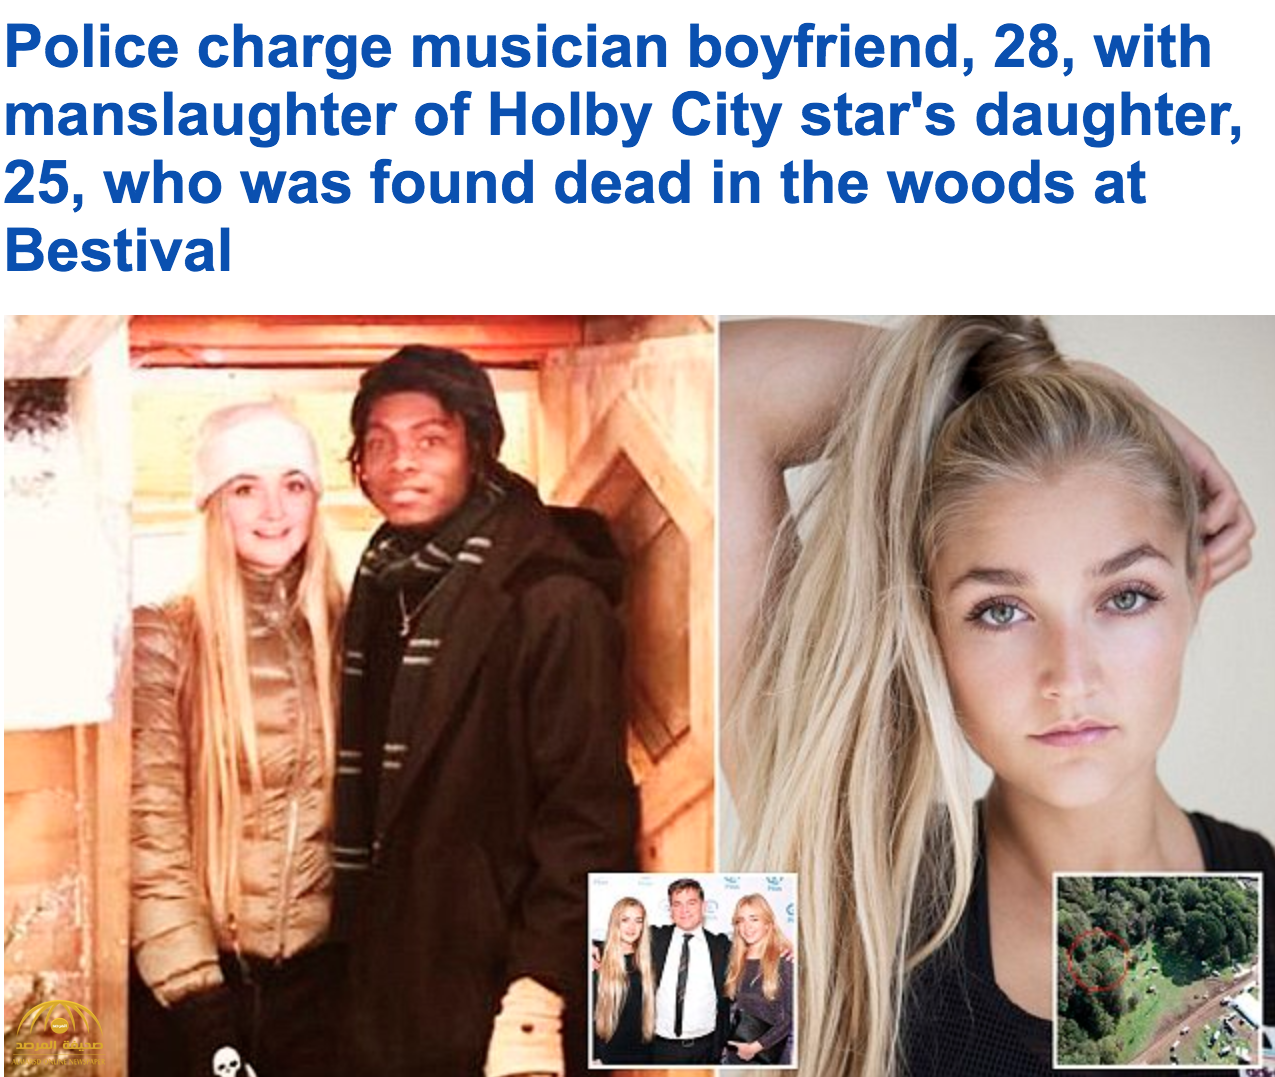 عثر على جثتها بالقرب من موقع مهرجان "بستيفال" .. مقتل ابنة ممثل شهير على يد حبيبها في لندن